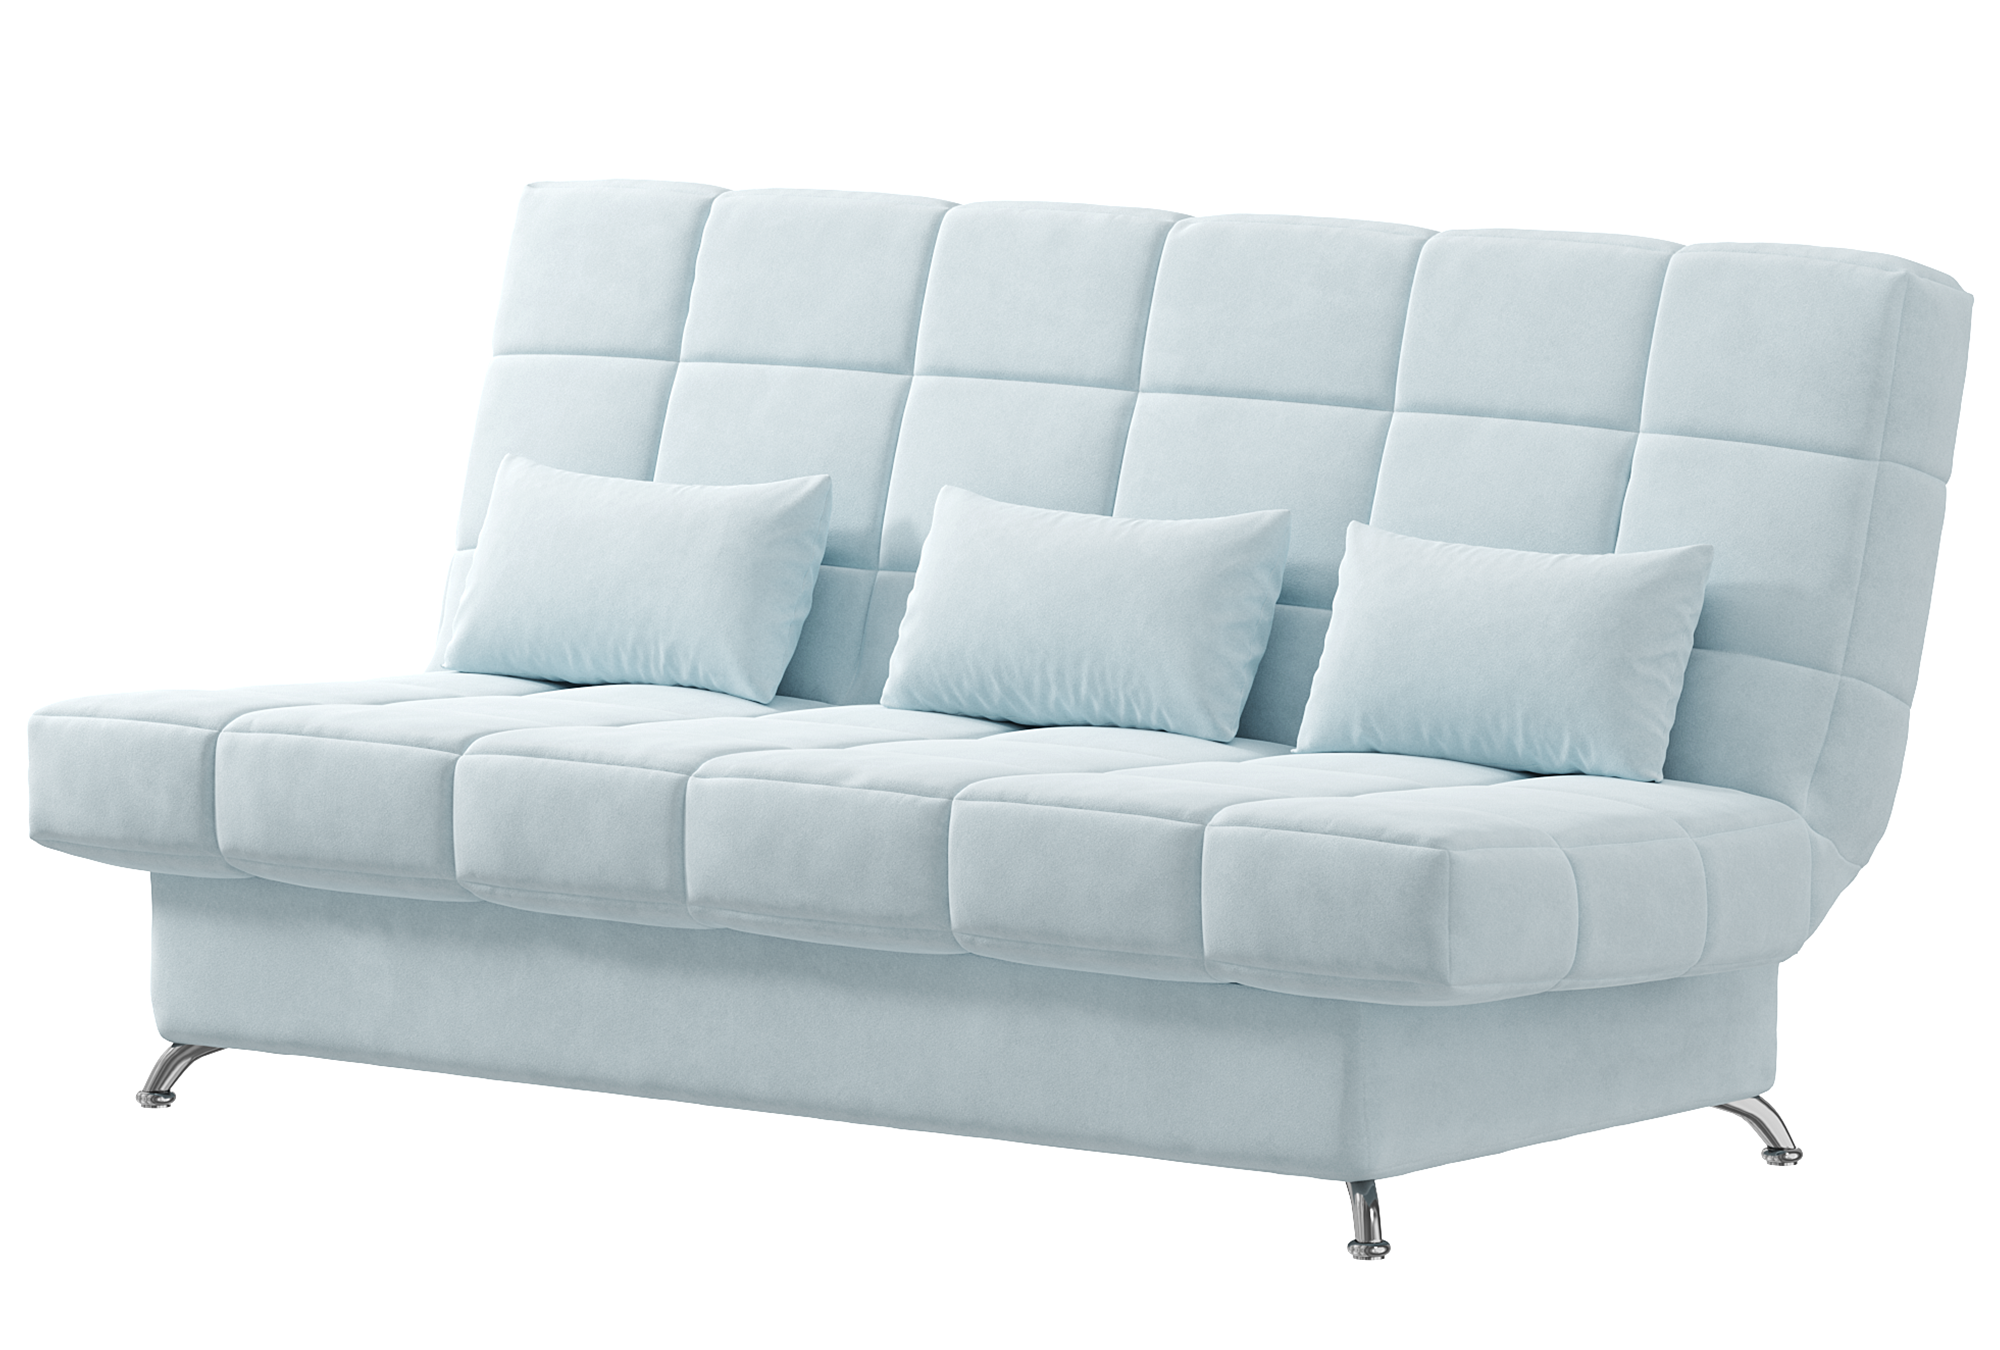 Диван Финка Софт 025 – Купить диван за 18900.00 руб. от производителя